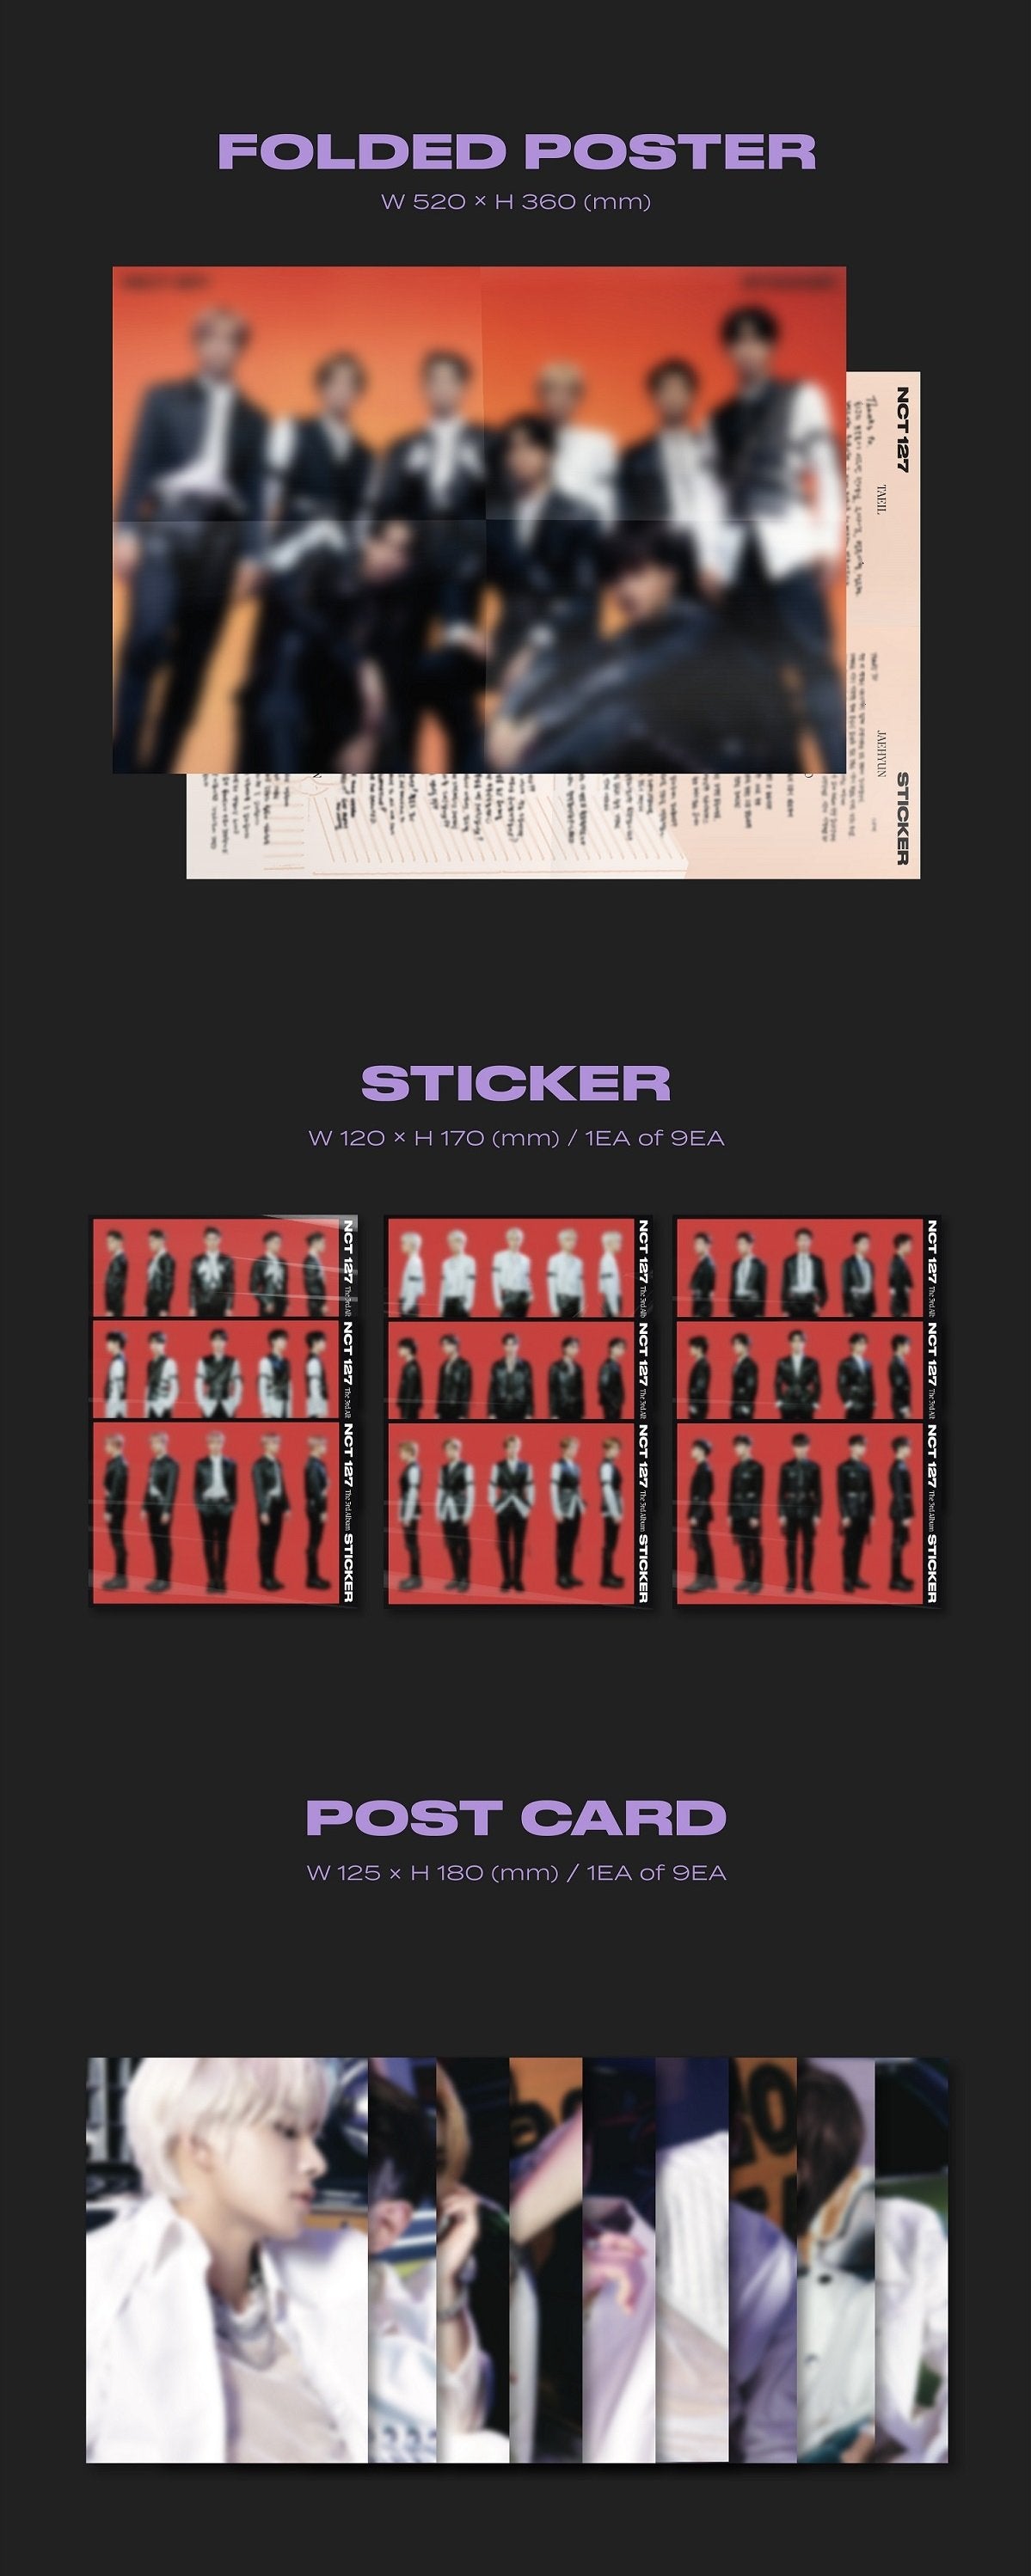 NCT 127 Vol. 3 - STICKER (Photobook Version) (STICKER Version)